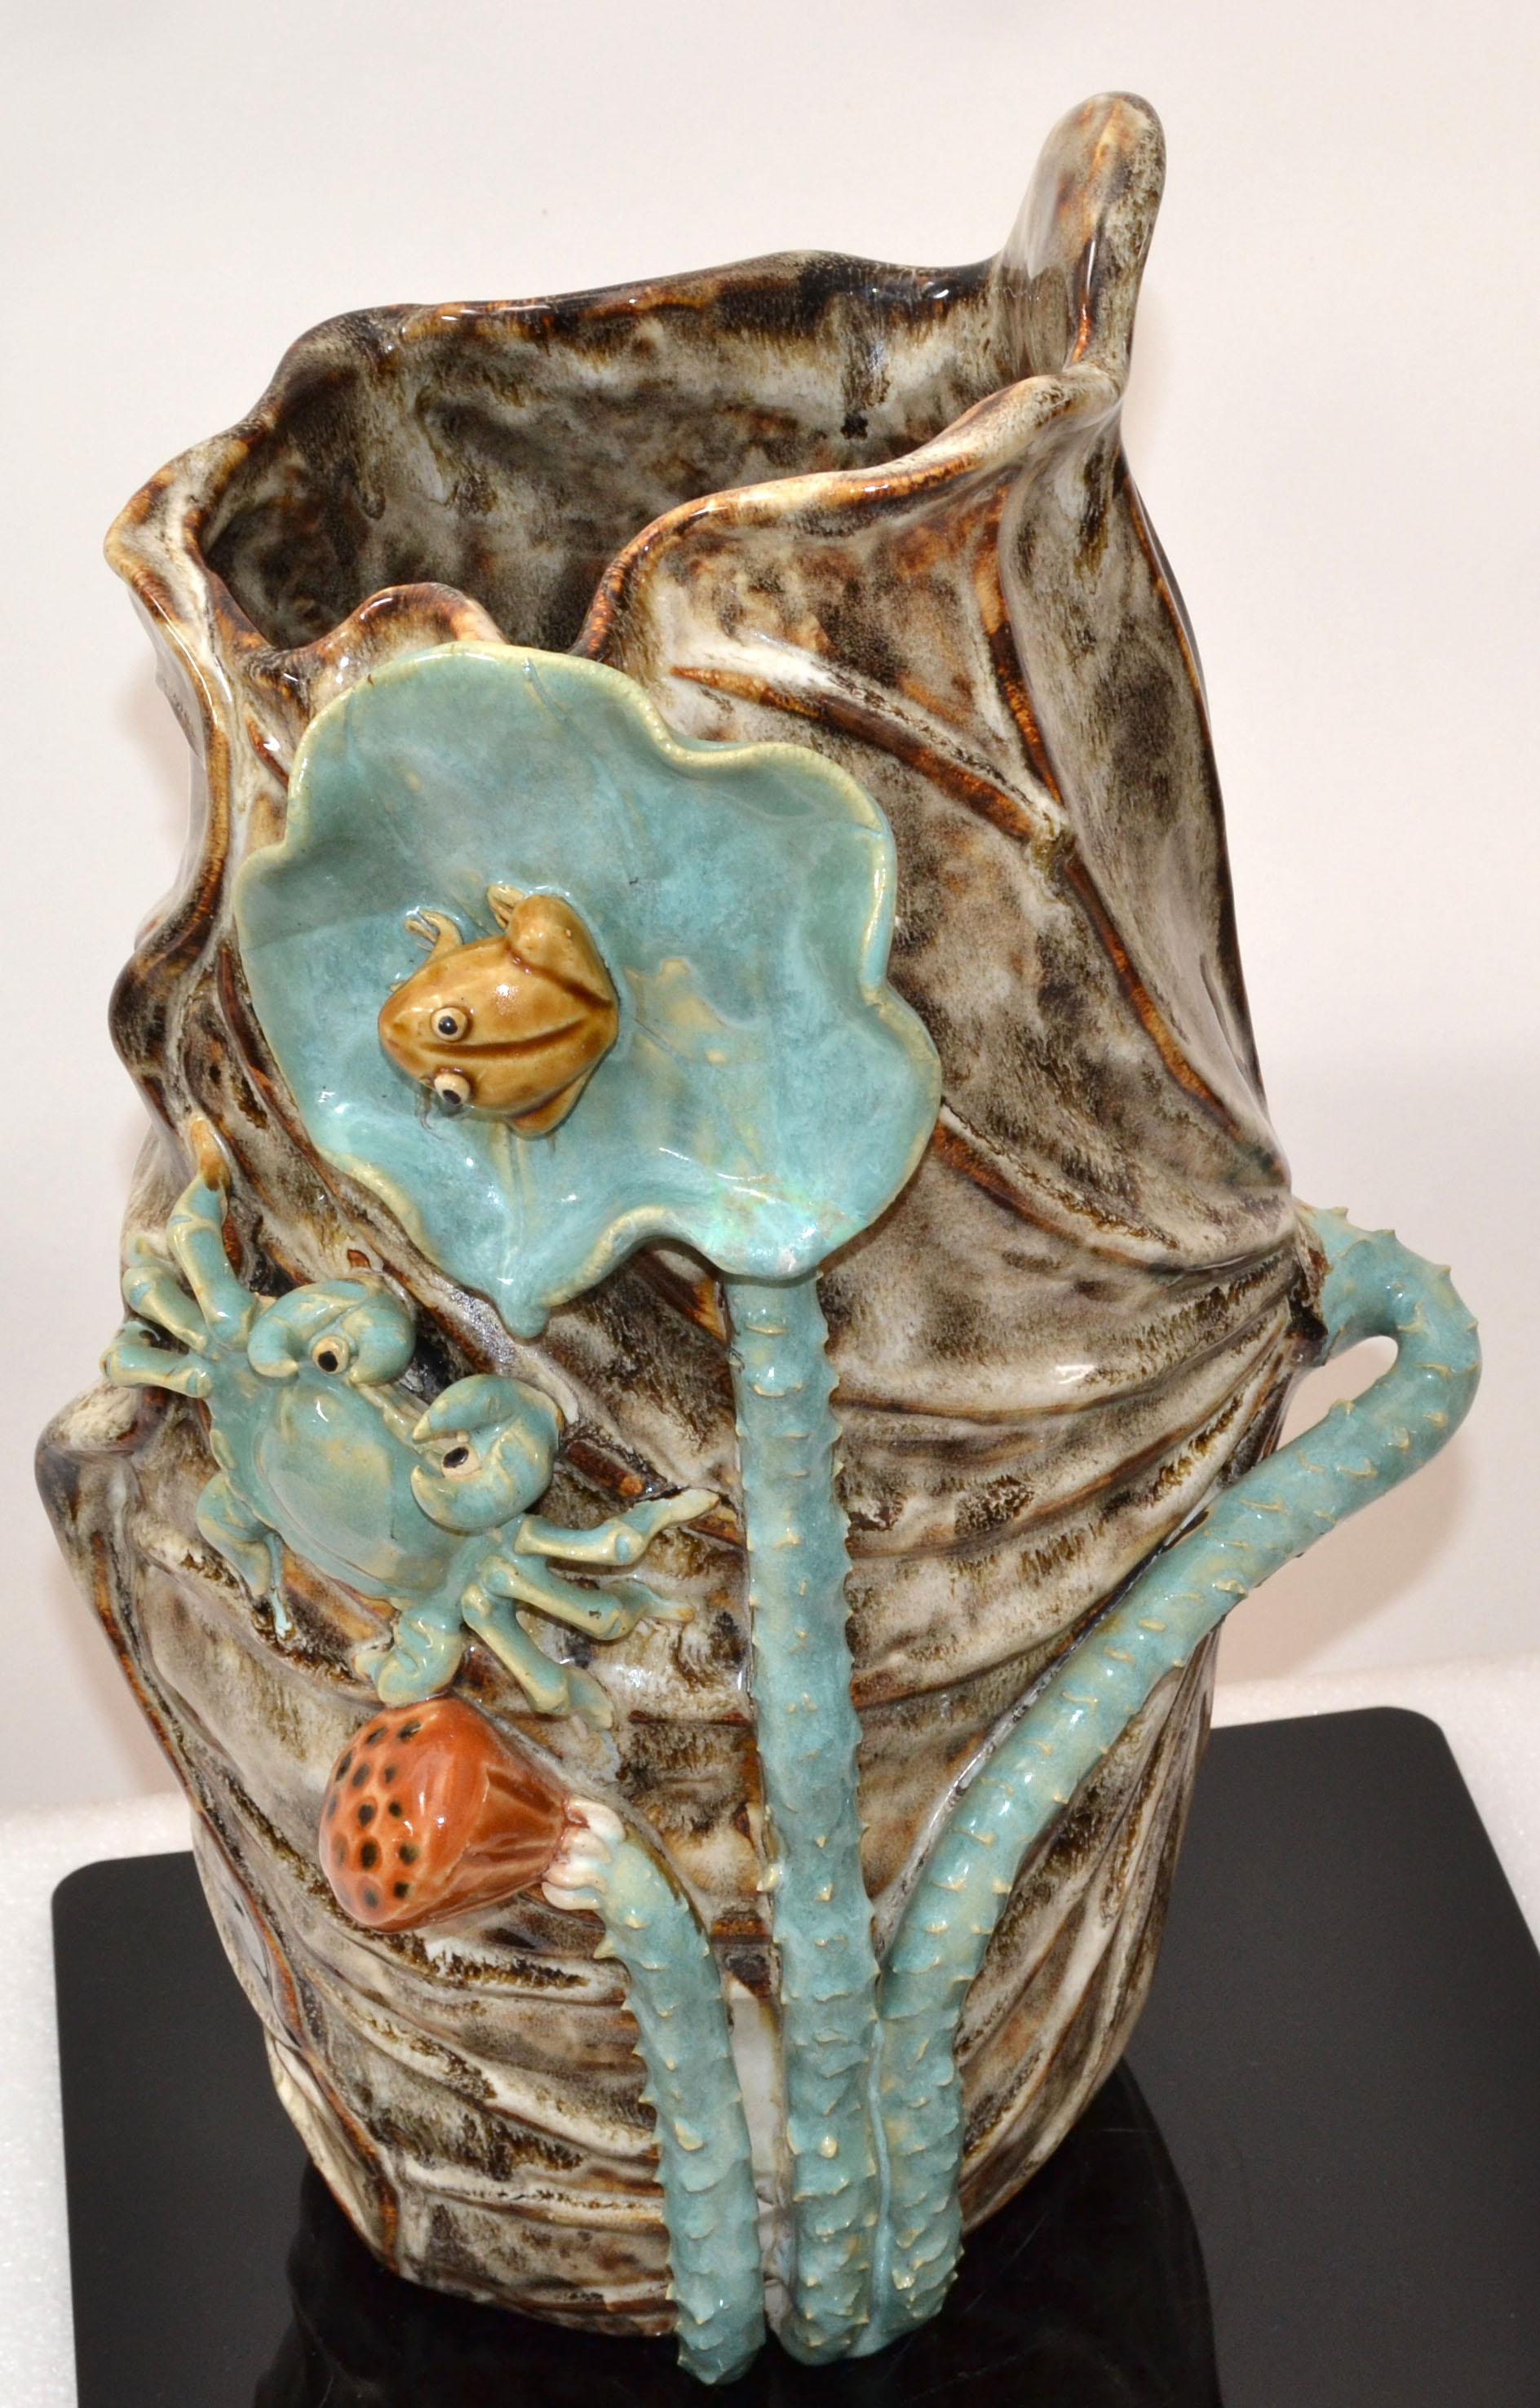 Très beau vase en céramique émaillée dans les tons de brun, de bleu et de bronze avec un motif nautique de grenouille et de crabe.
Magnifiquement conçu et aux couleurs éclatantes.
Numéroté L24.